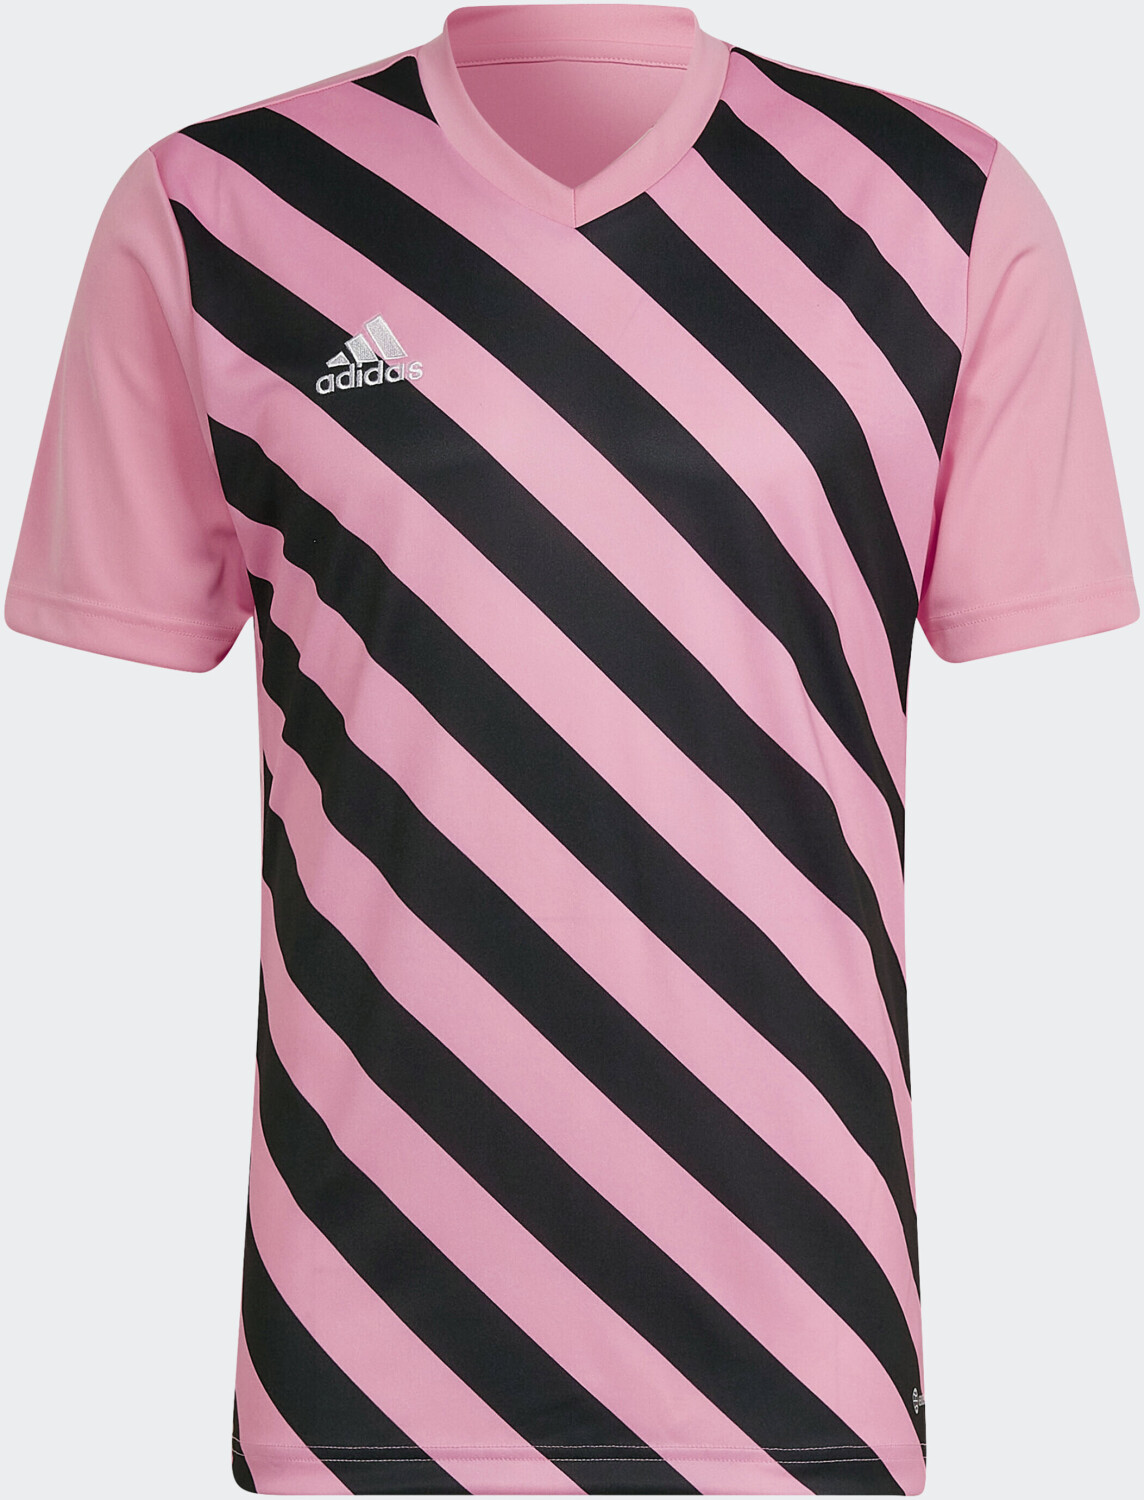 22 Preisvergleich Graphic Trikot 13,12 pink semi Adidas glow/black bei Entrada € ab |